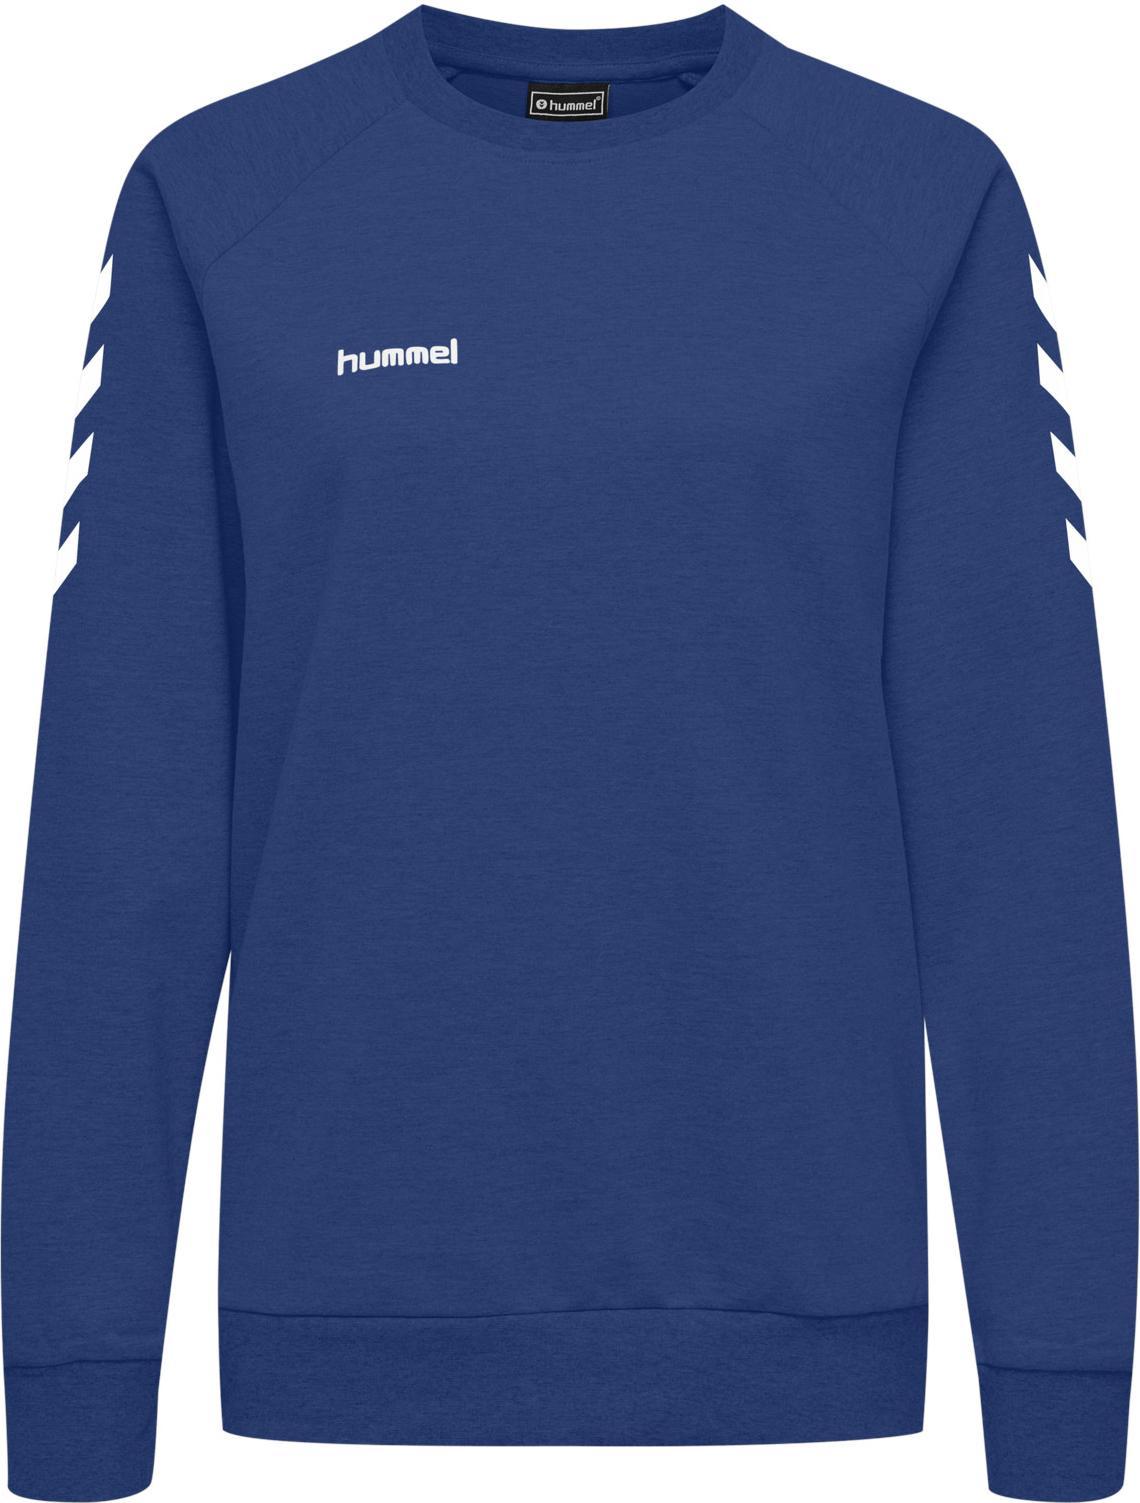 Φούτερ-Jacket hummel cotton sweatshirt 45